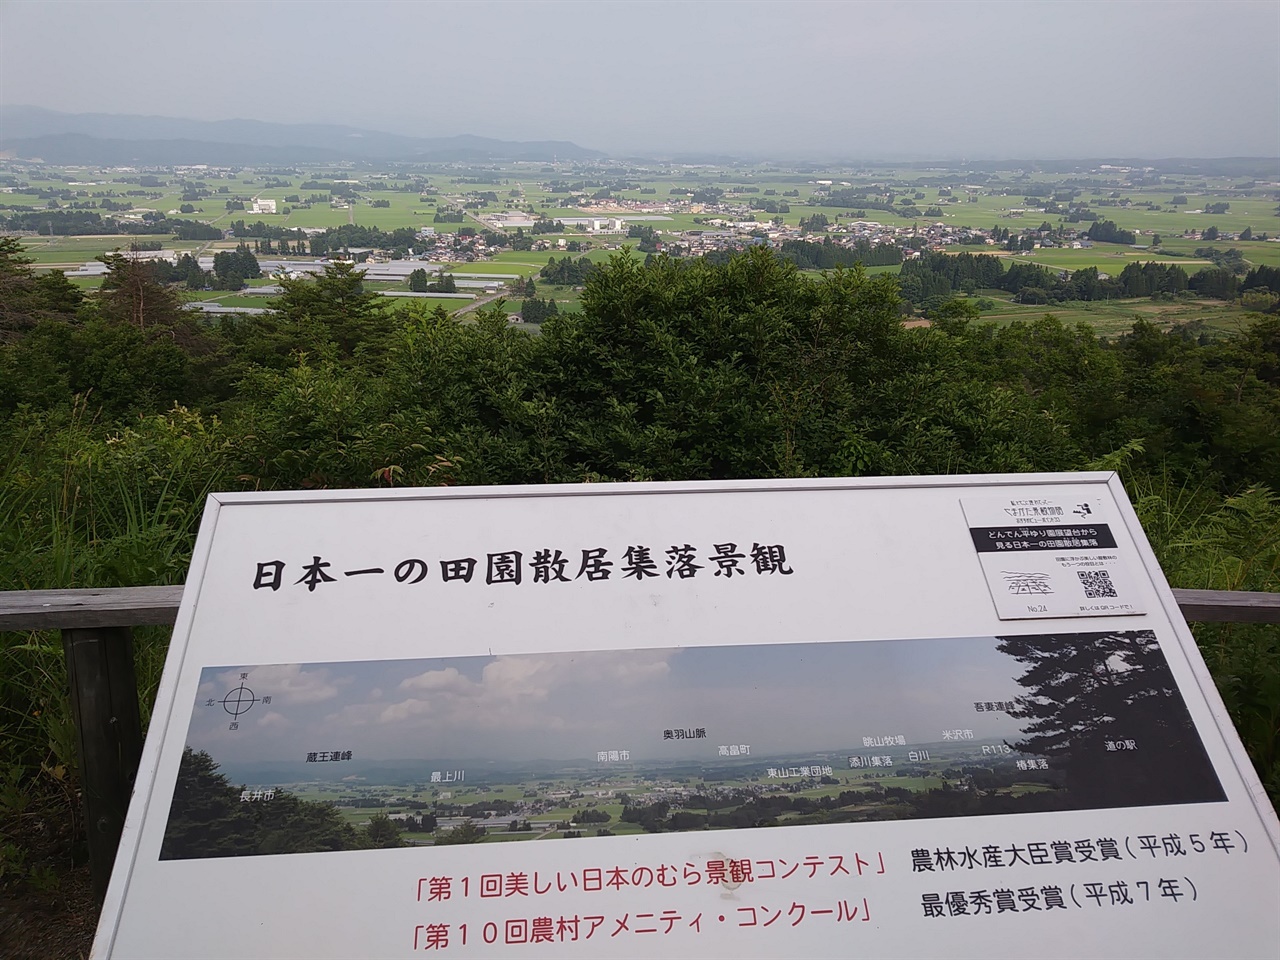 일본 최고의 전원산거집락경관으로 선정된 일본 ‘이데마치(飯豊町)’ 마을